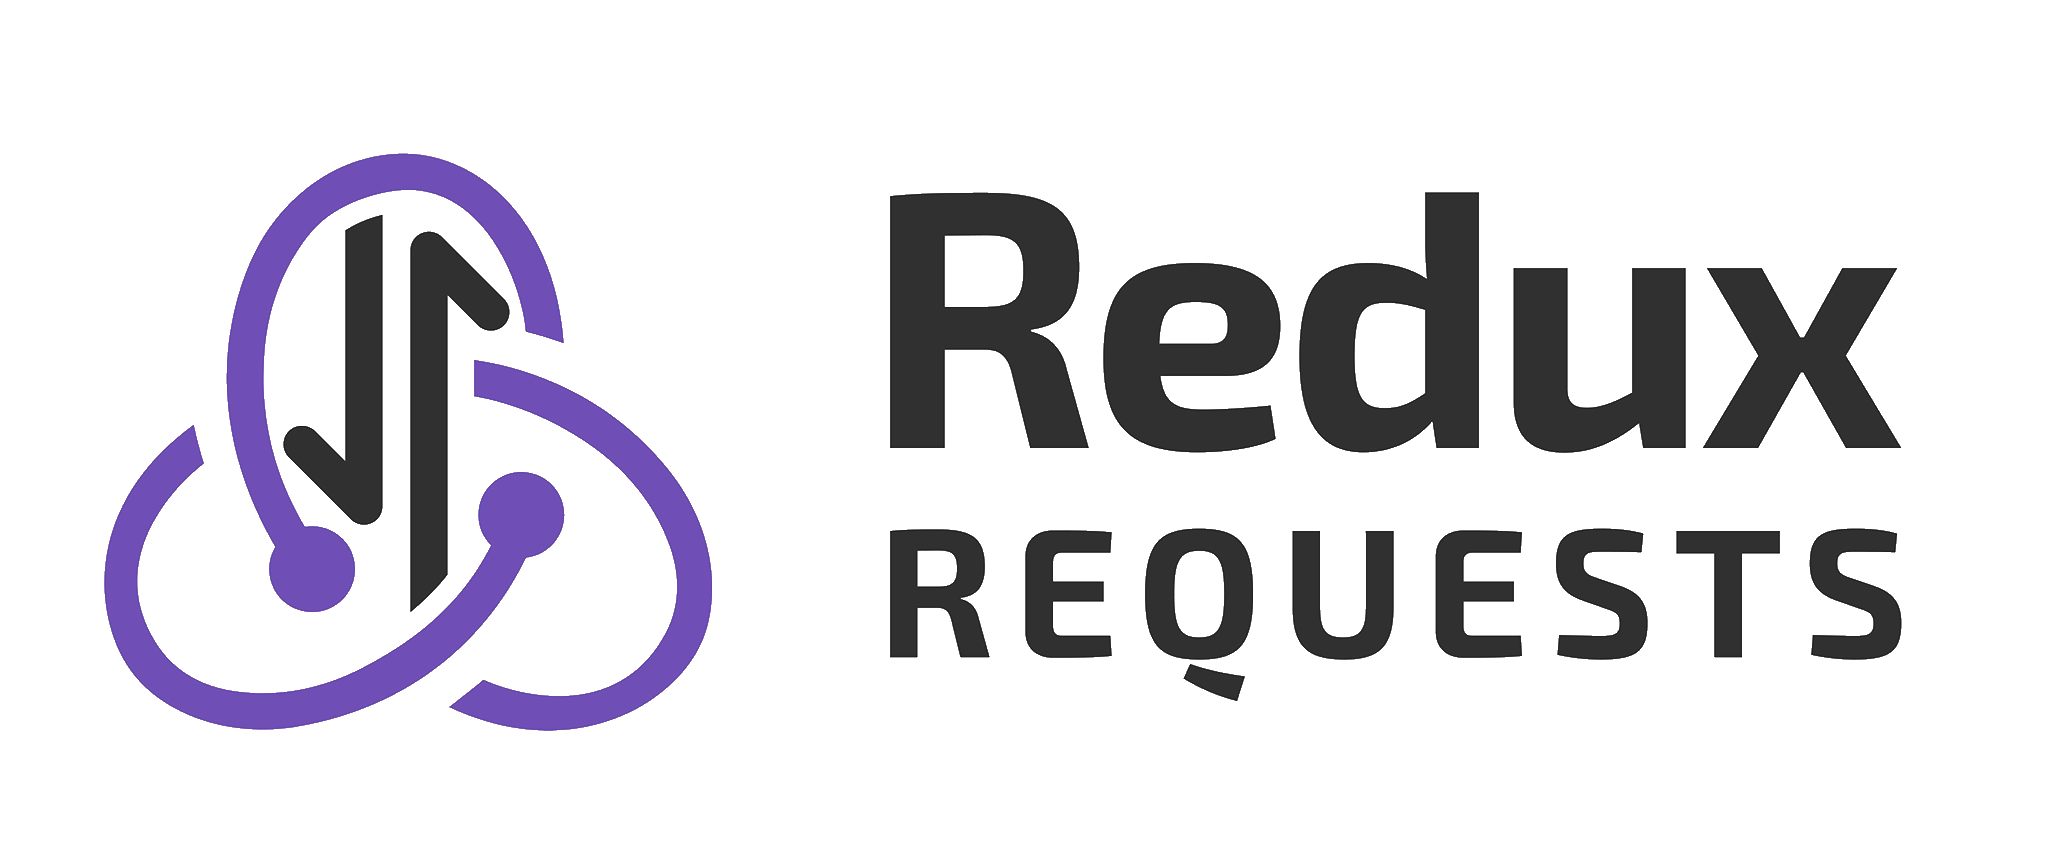 Redux query. Lerna лого. Redux 1.1 надпись. Лого Network Redux. Нетворк редукс Дискорд.